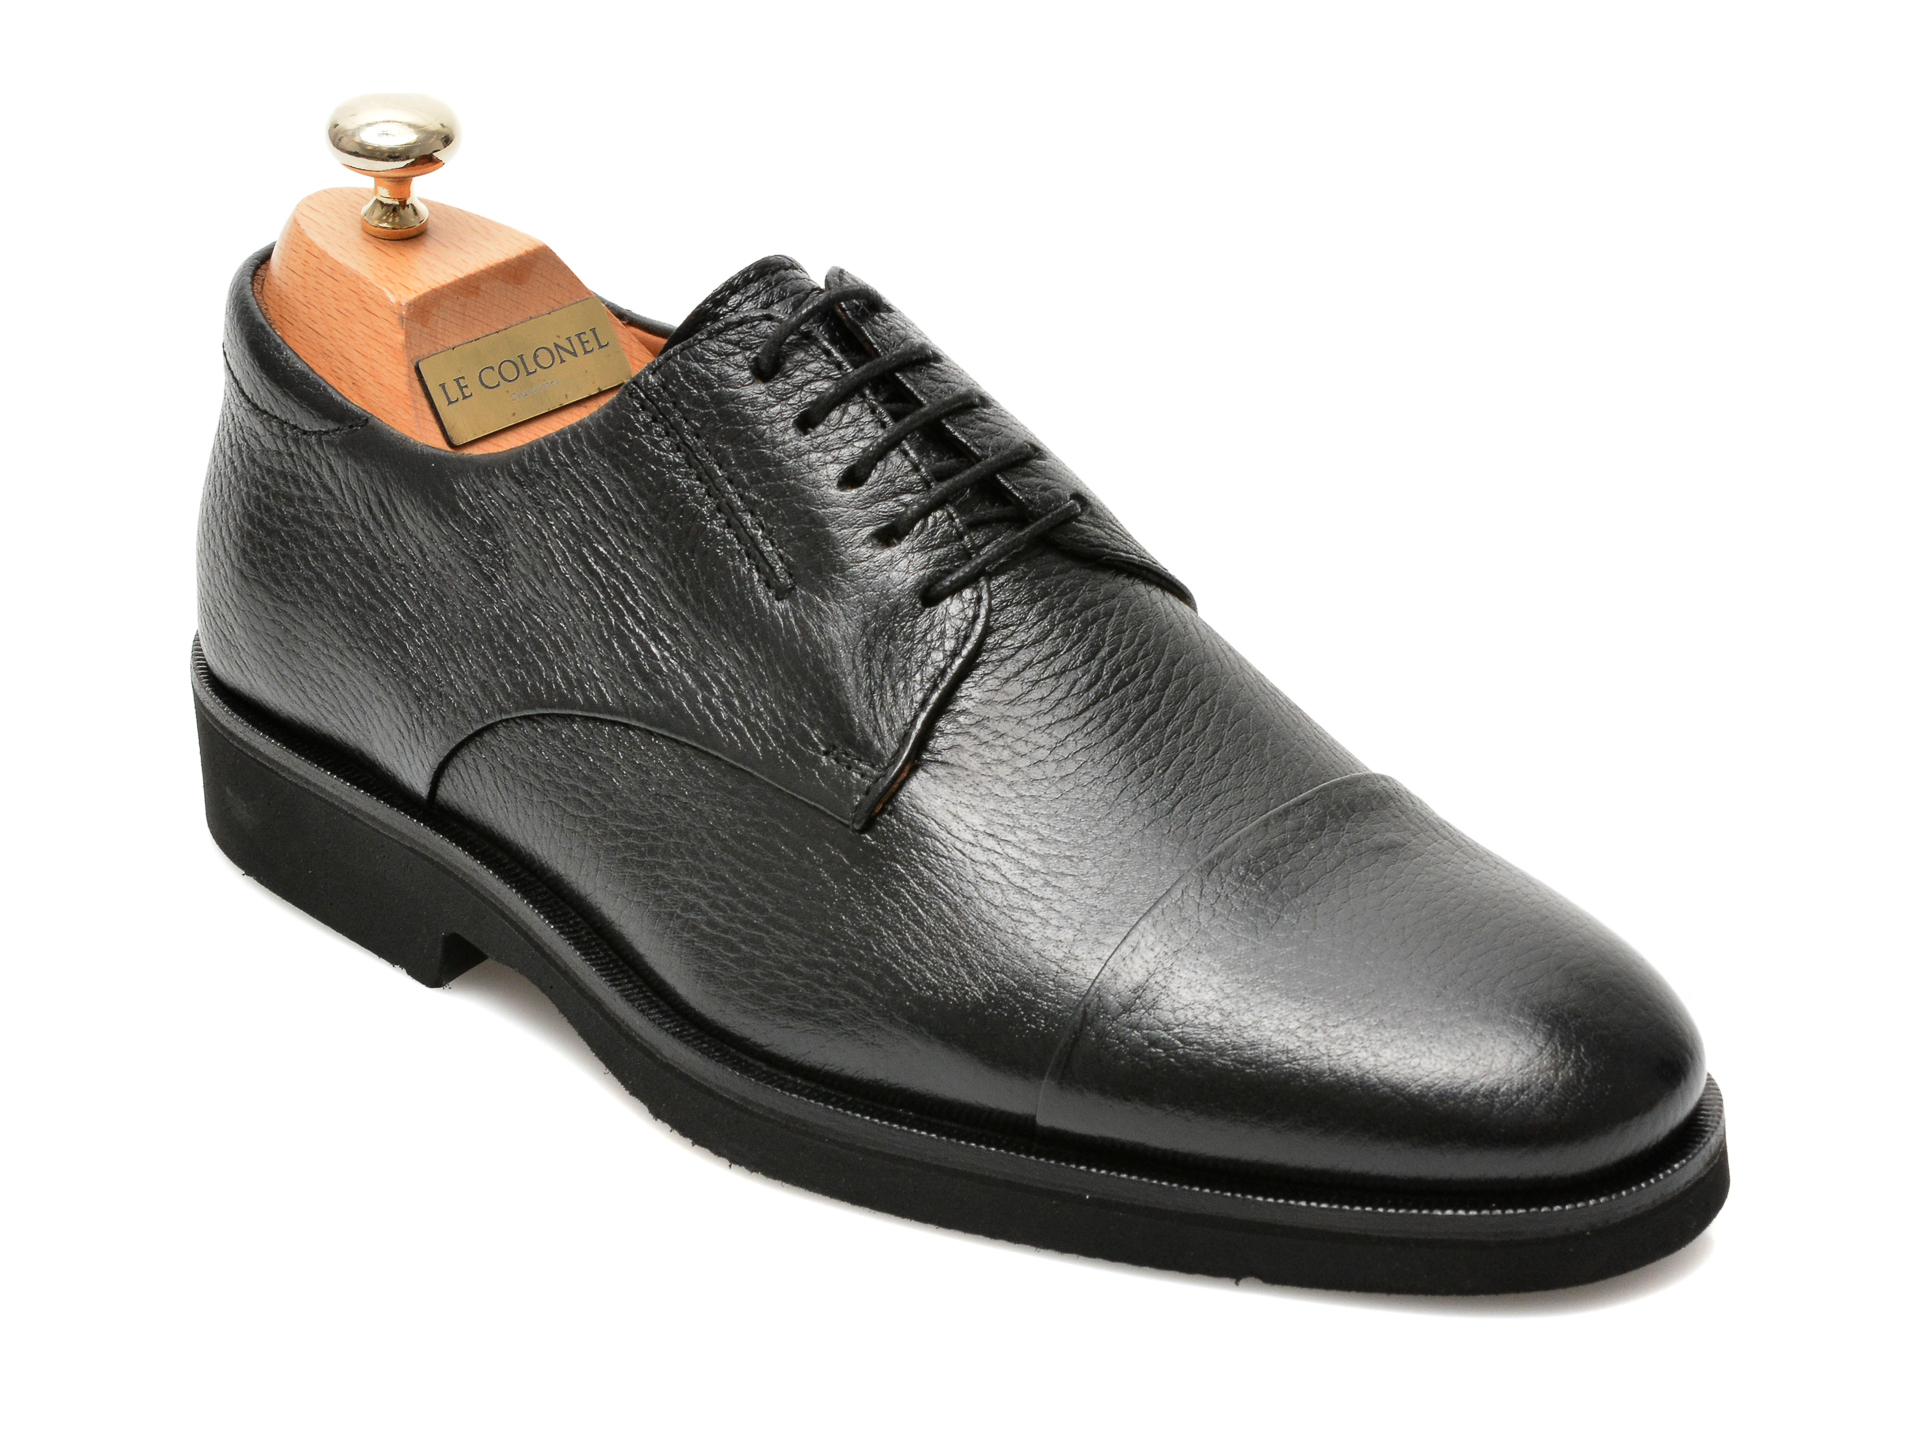 Pantofi LE COLONEL negri, 40904, din piele naturala Le Colonel